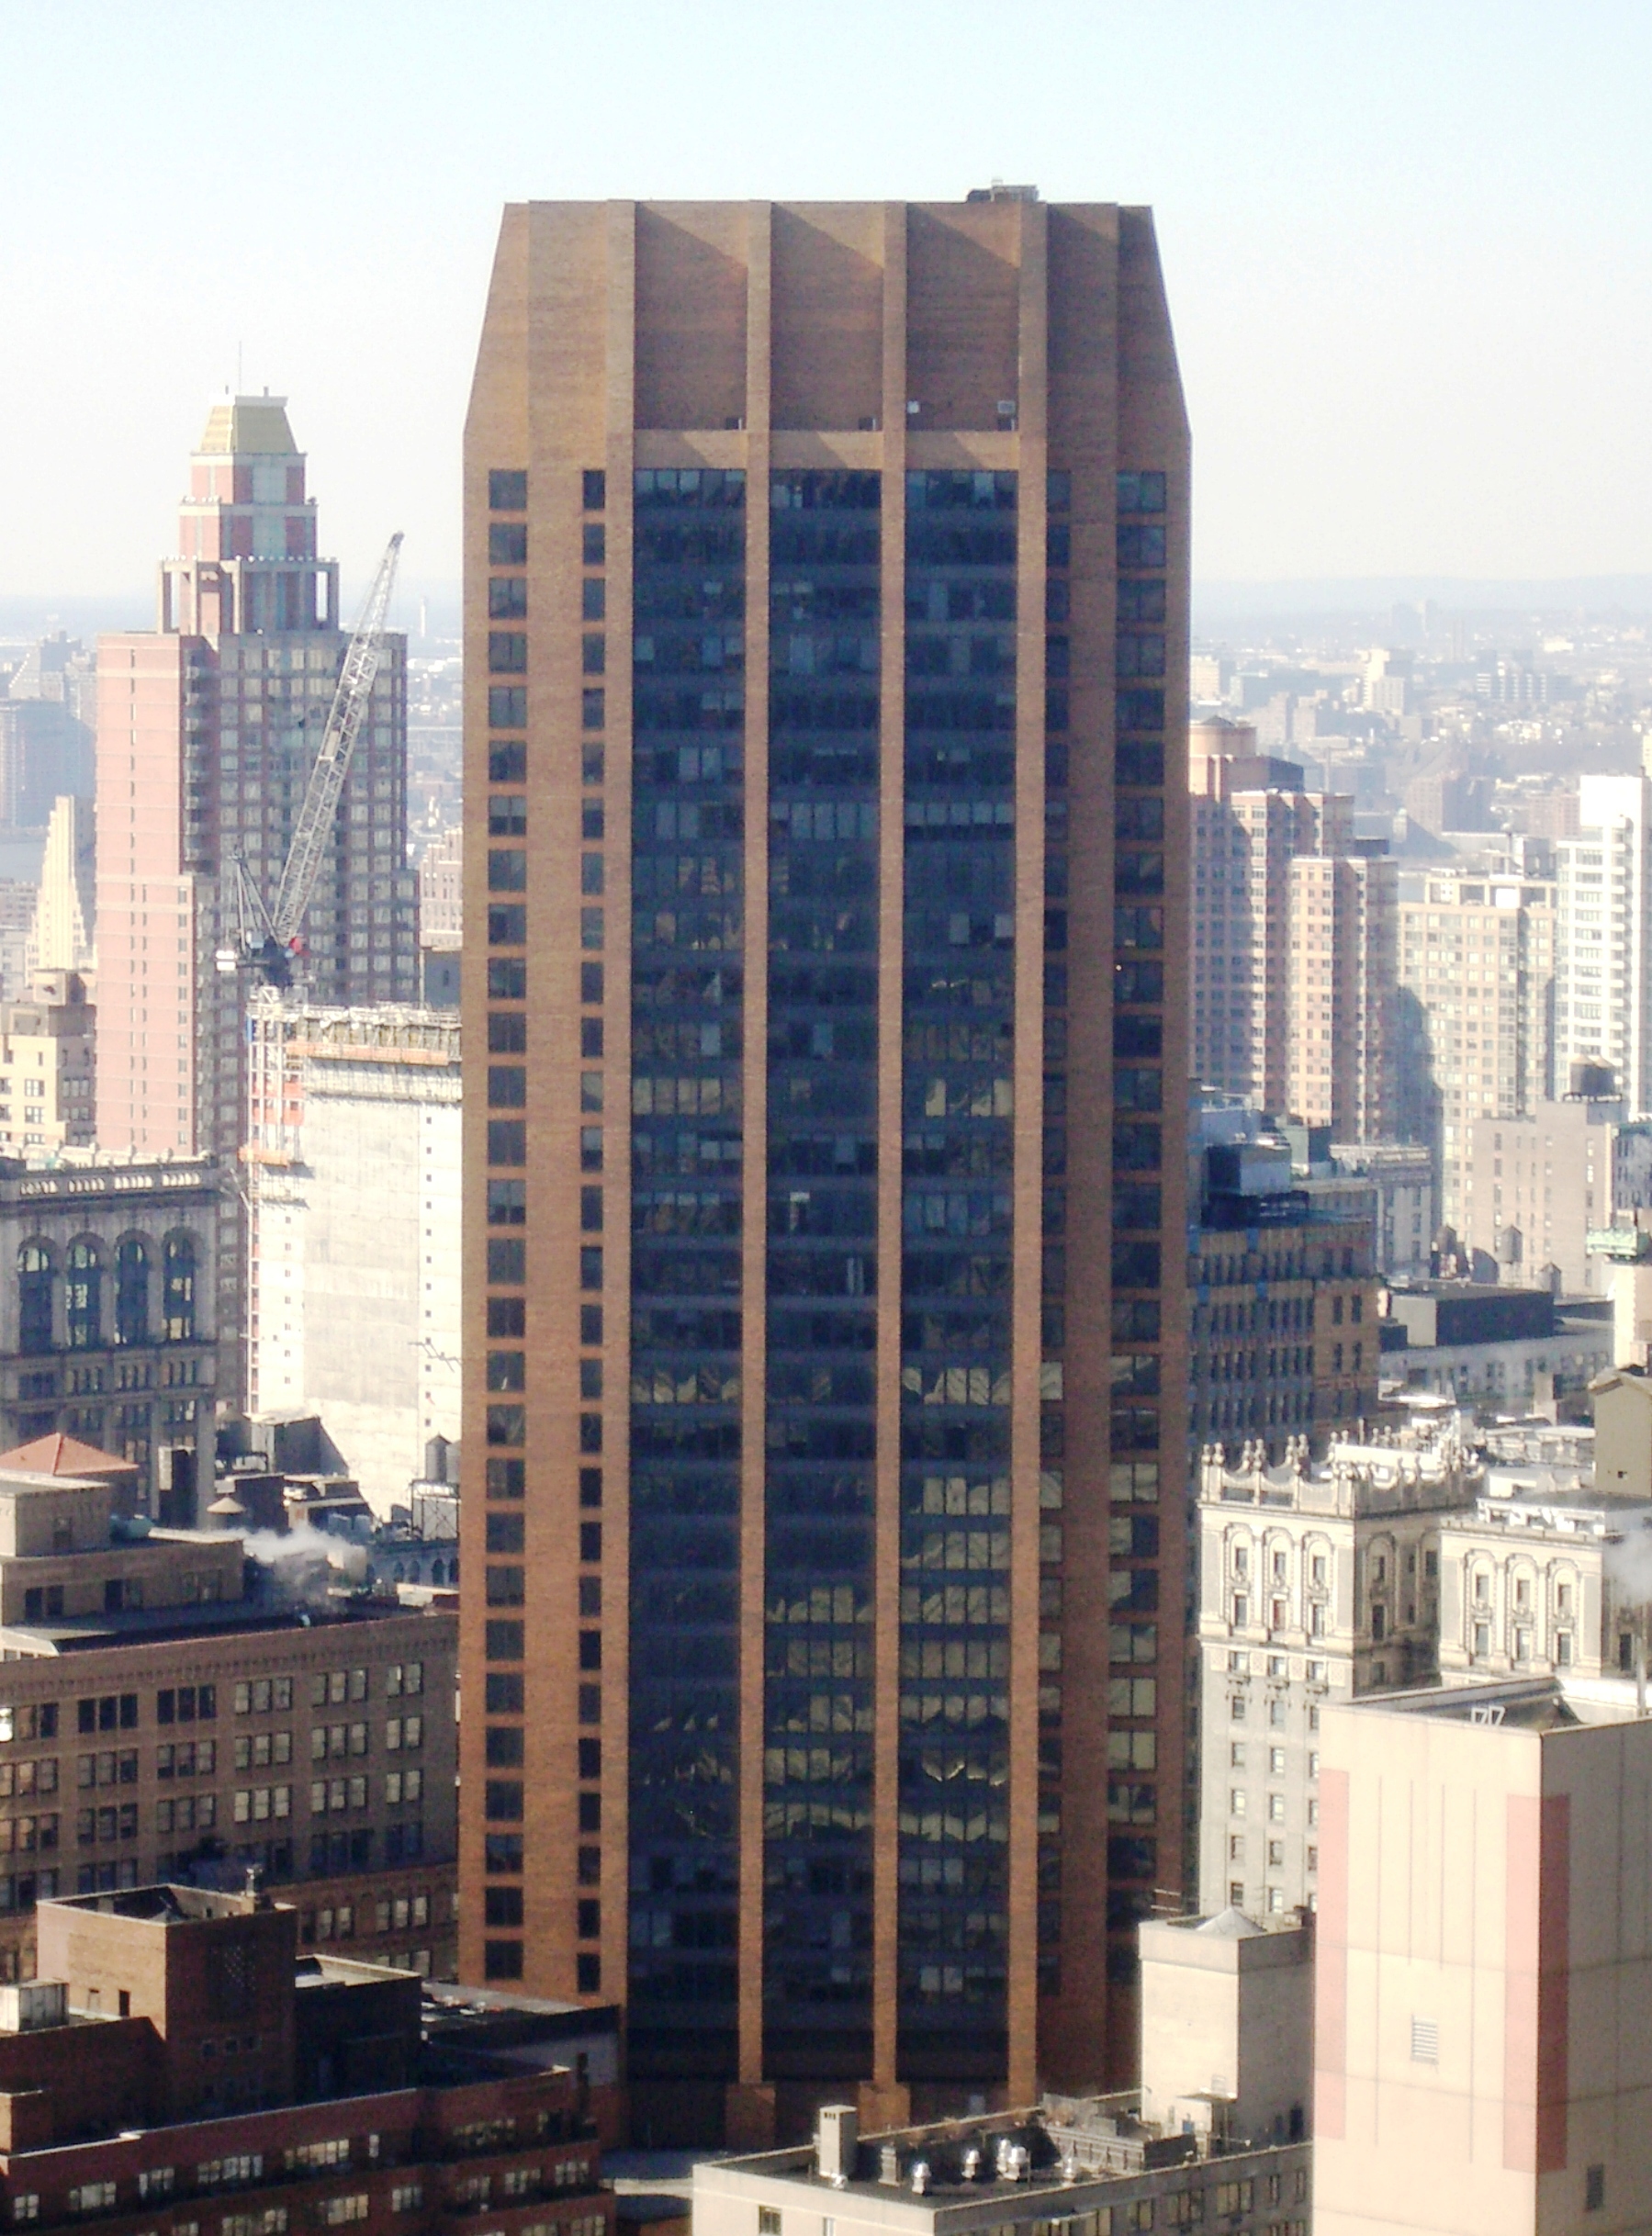 IEEE總部在紐約3 Park Avenue的第17層